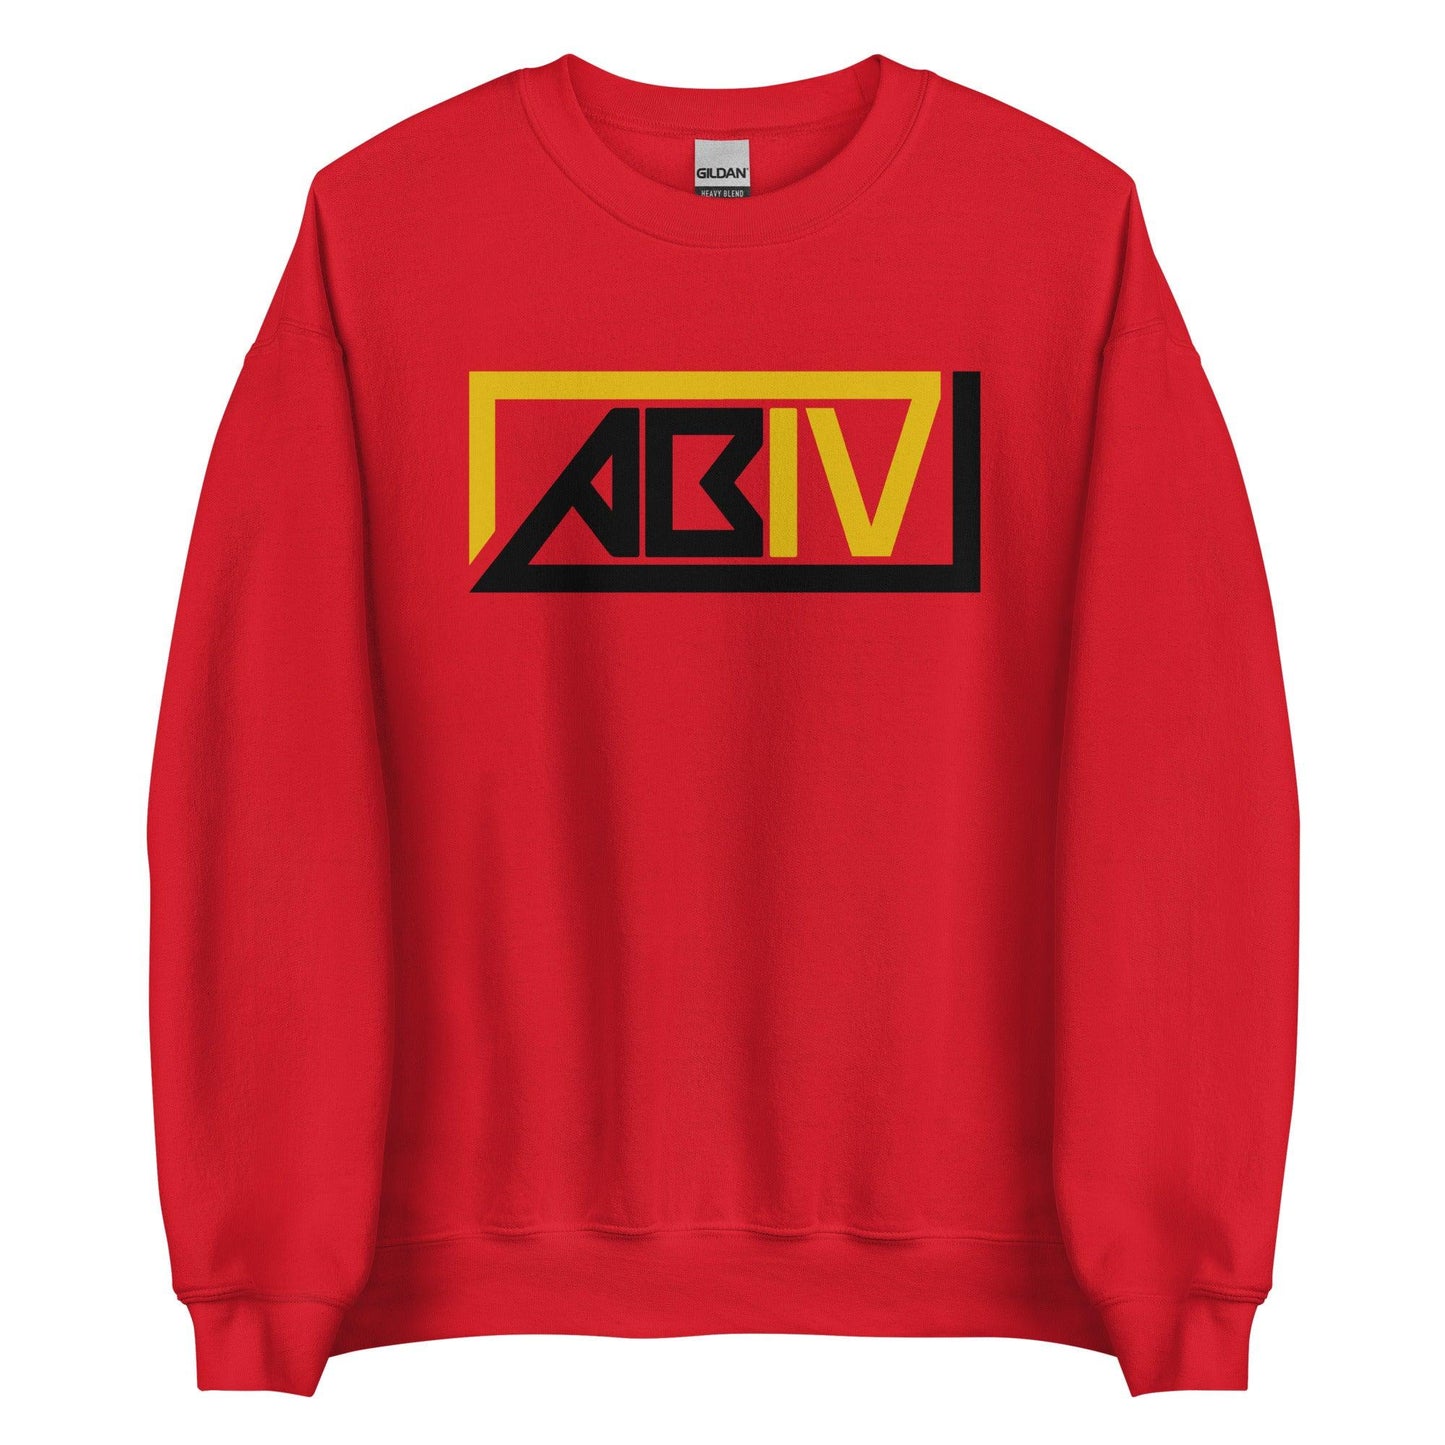 Arland Bruce IV "ABIV" Sweatshirt - Fan Arch